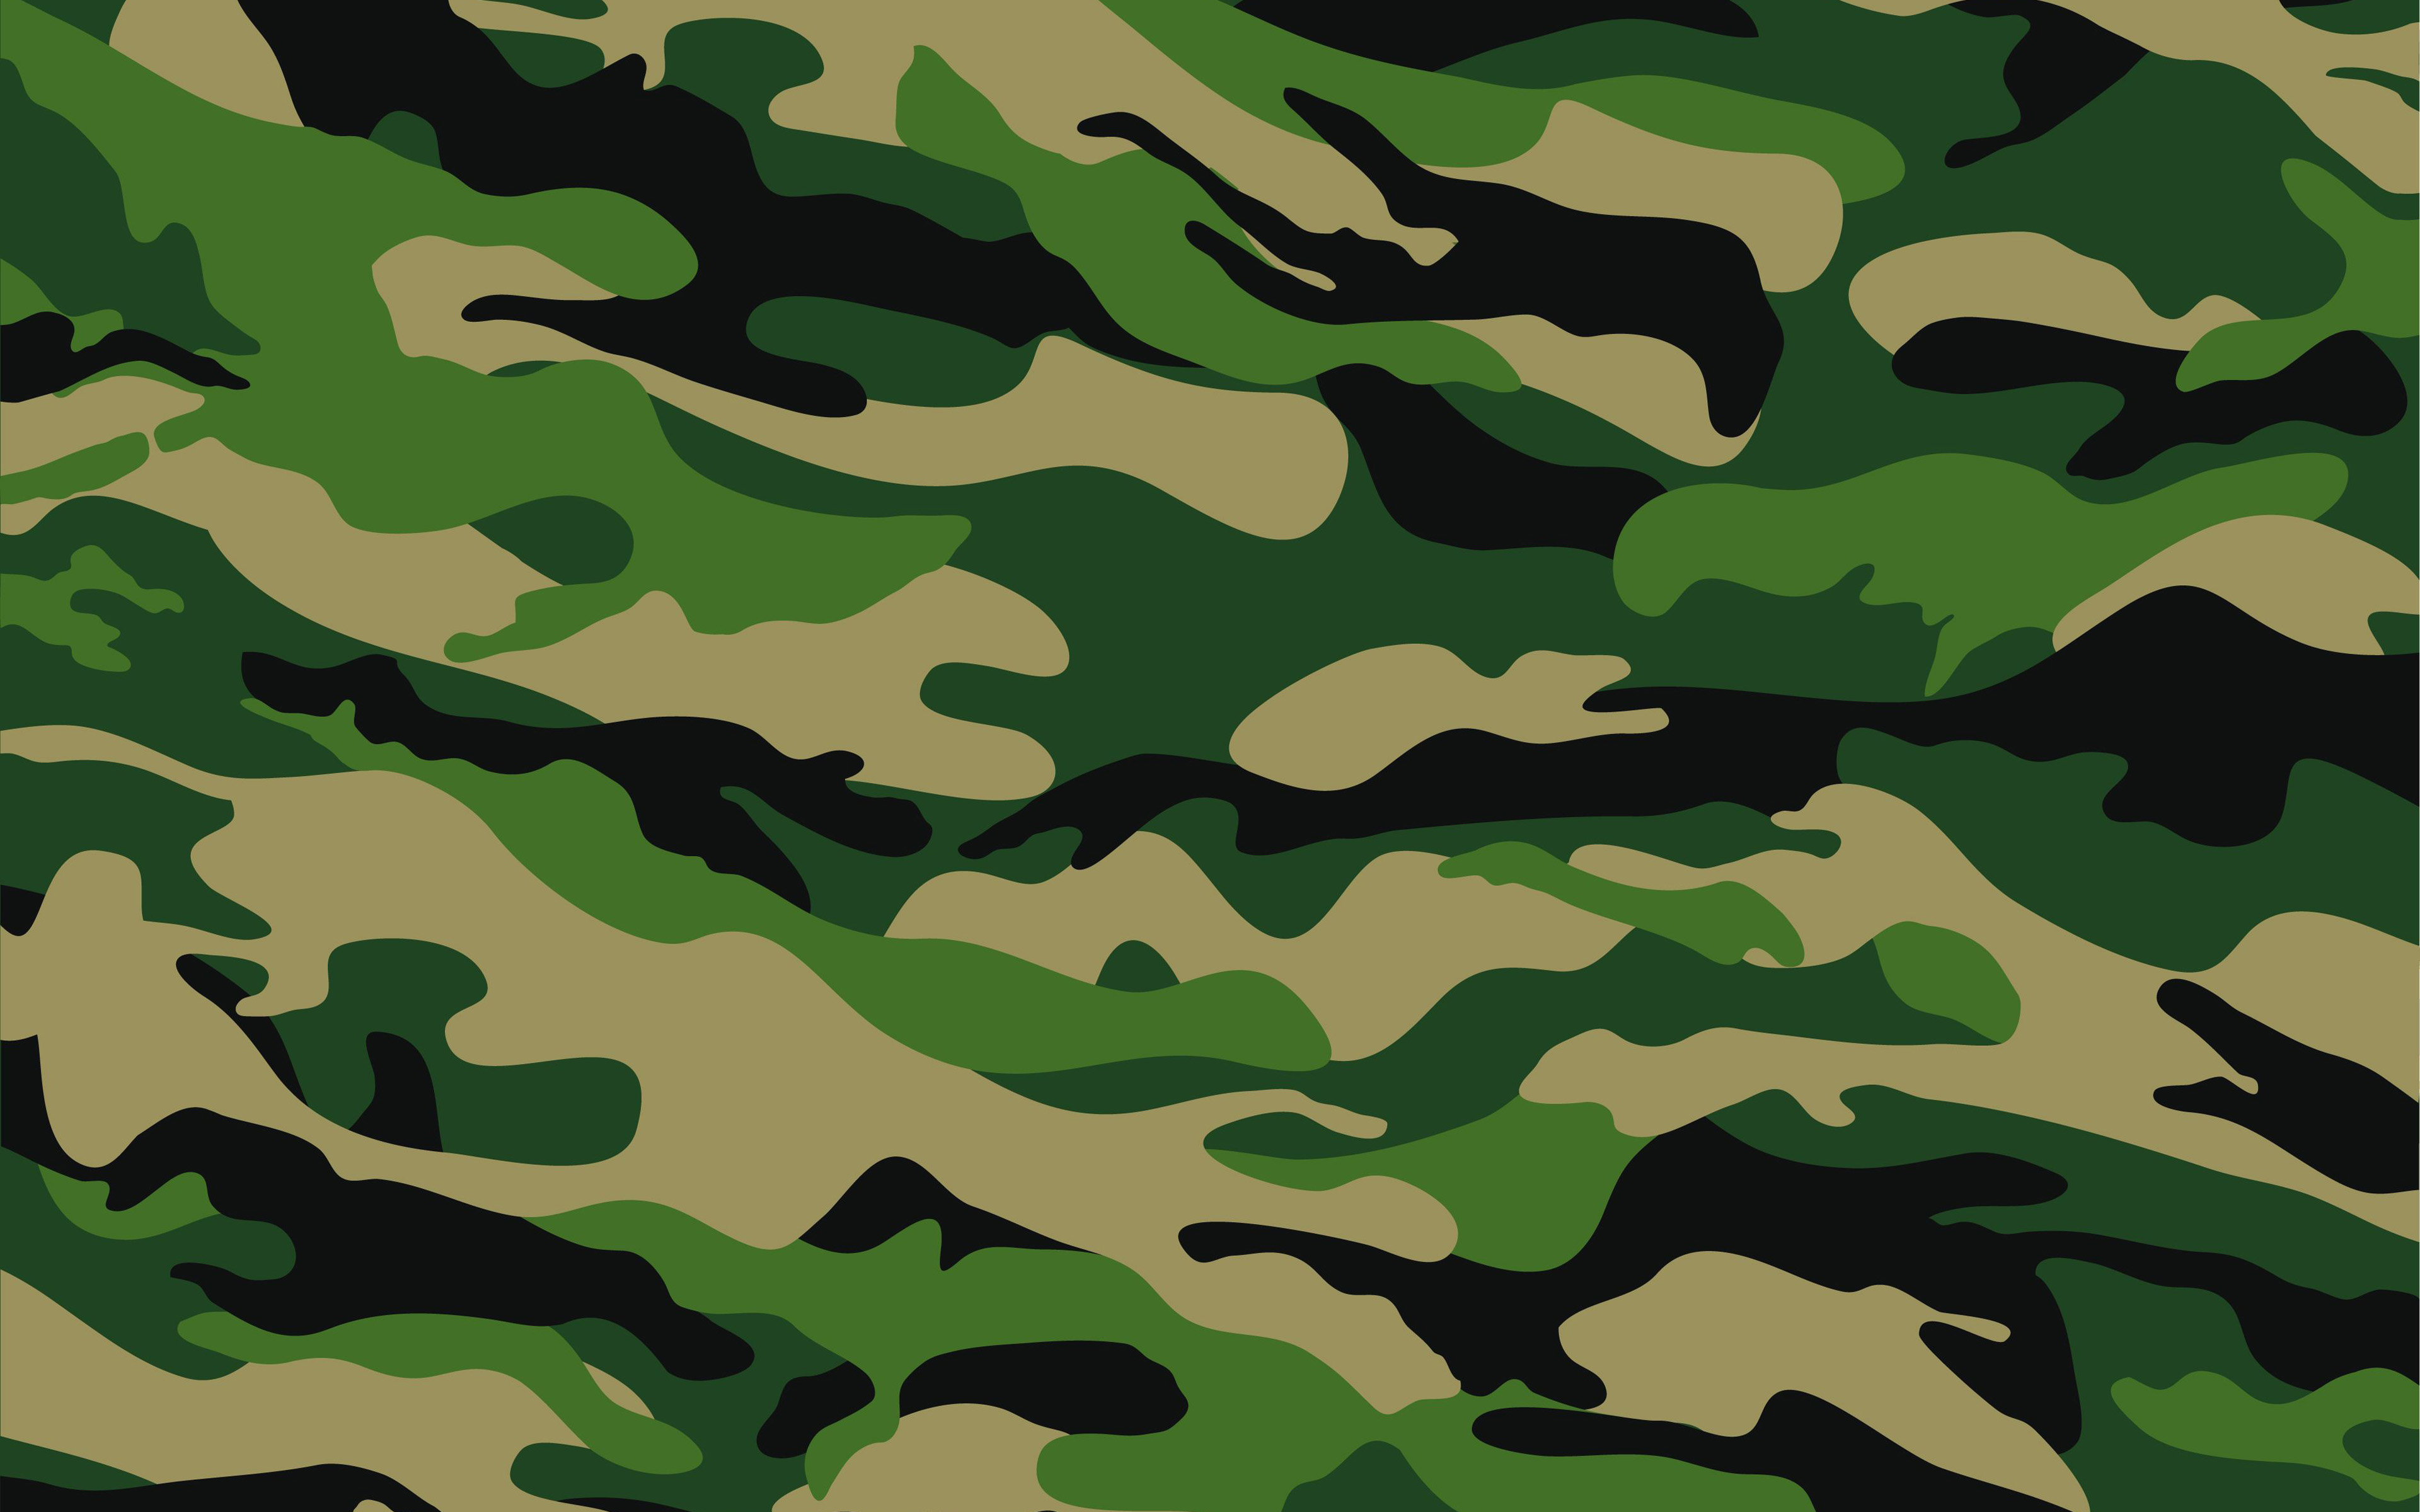 Descargar fondos de pantalla camuflaje verde, 4k, camuflaje militar, fondo  de camuflaje verde, patrón de camuflaje, texturas de camuflaje, fondos de  camuflaje, camuflaje de verano monitor con una resolución 3840x2400.  Imagenes de